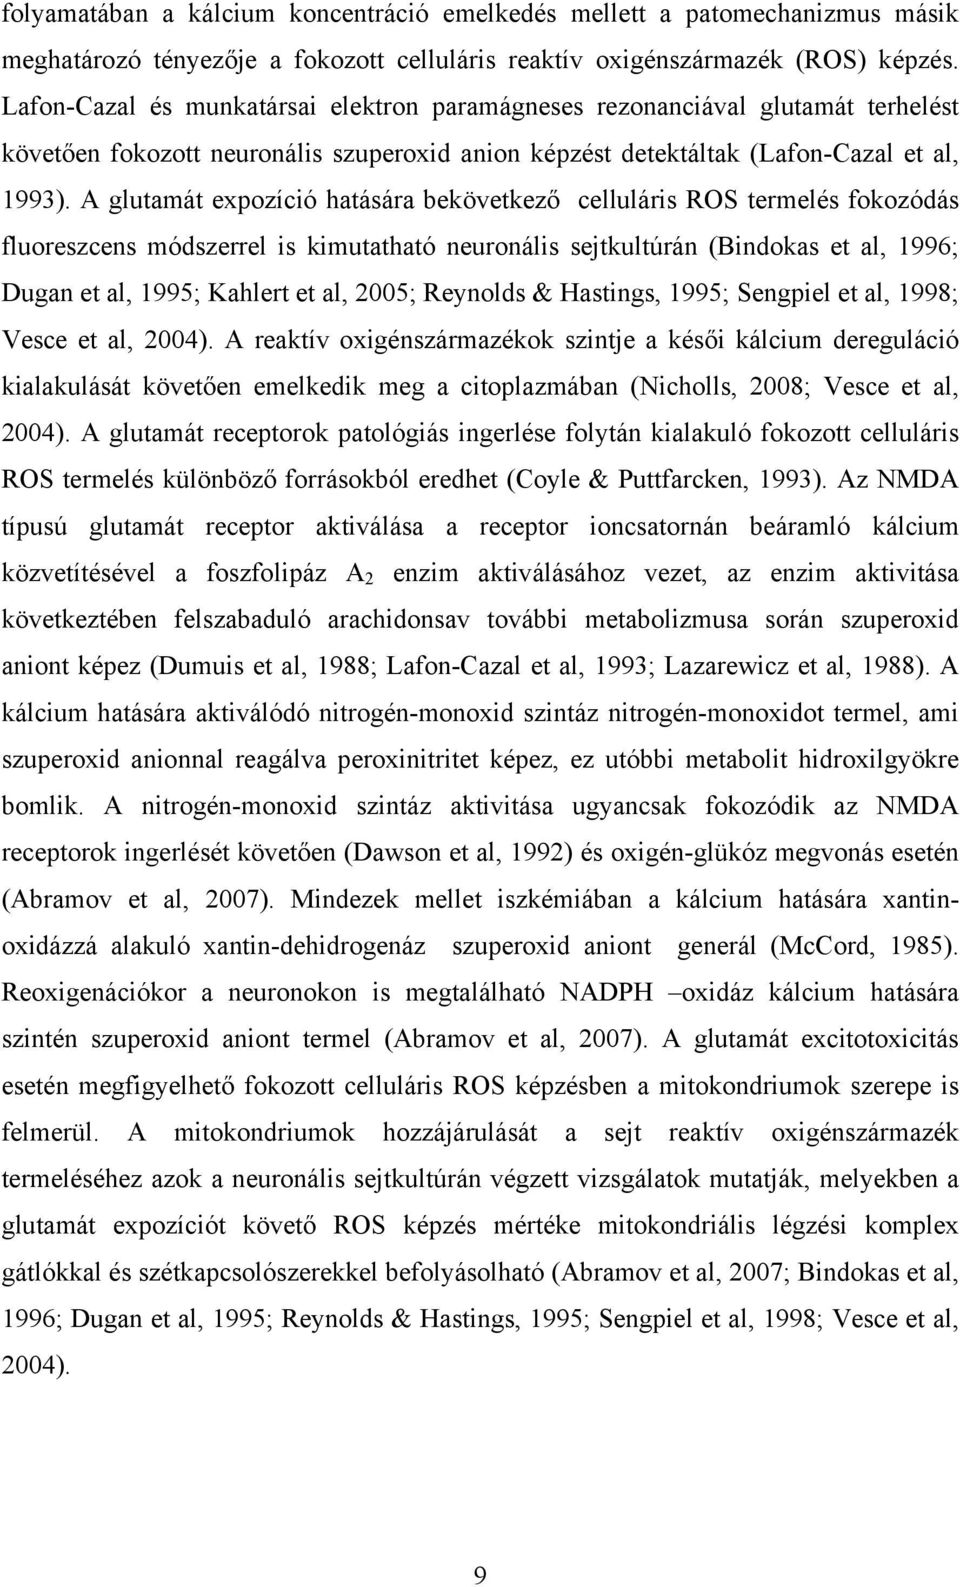 A glutamát expozíció hatására bekövetkező celluláris ROS termelés fokozódás fluoreszcens módszerrel is kimutatható neuronális sejtkultúrán (Bindokas et al, 1996; Dugan et al, 1995; Kahlert et al,